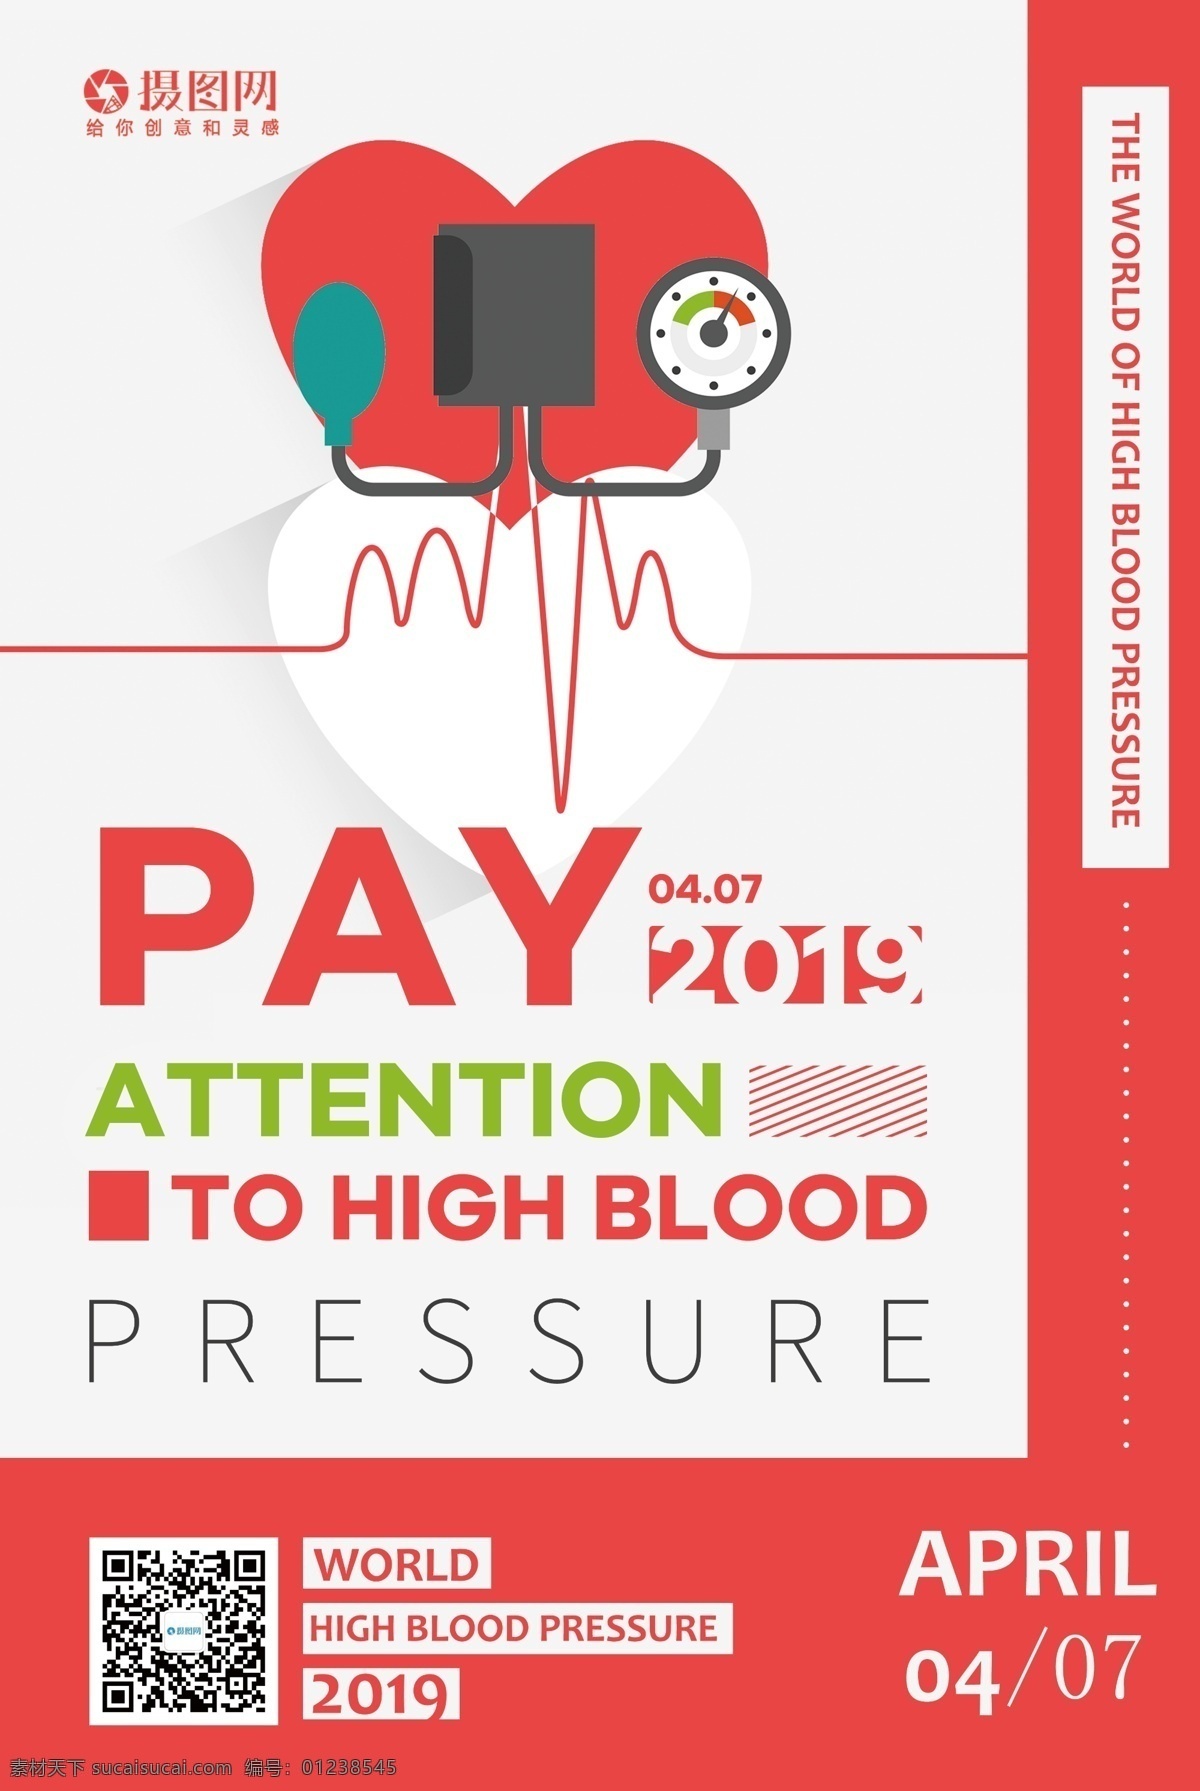 国际 高血压 日 公益 宣传 英文 海报 国际高血压日 公益宣传 疾病 血压 心脏 英文海报 纯英文海报